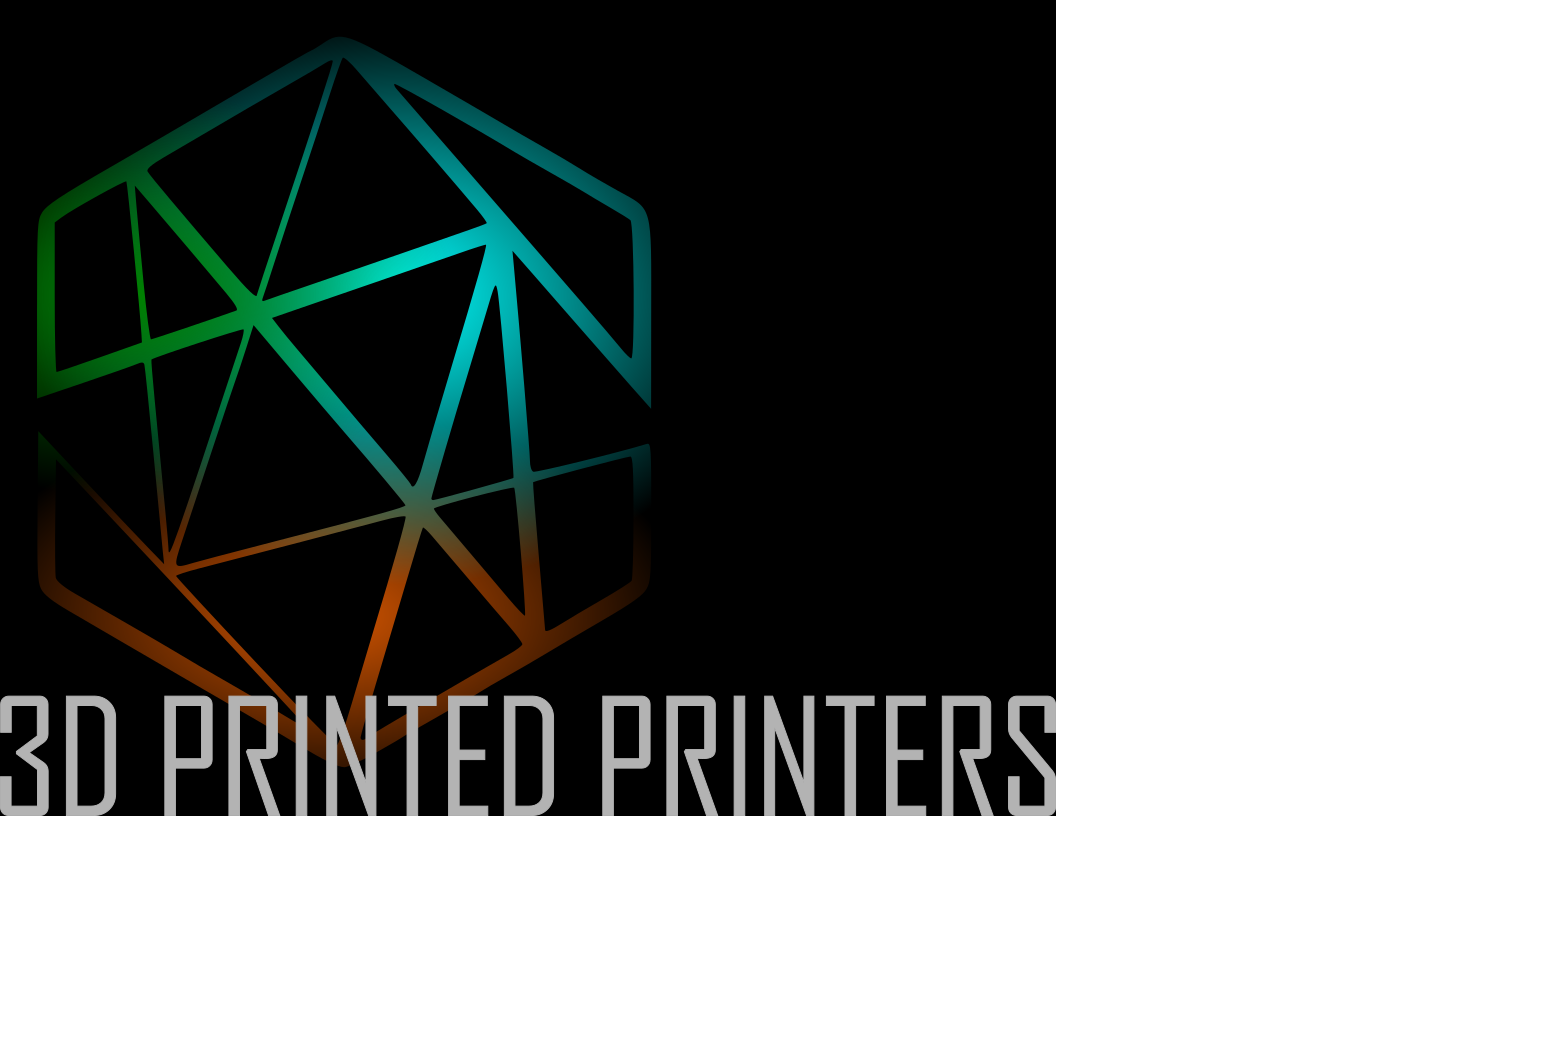 3D Printed Printers